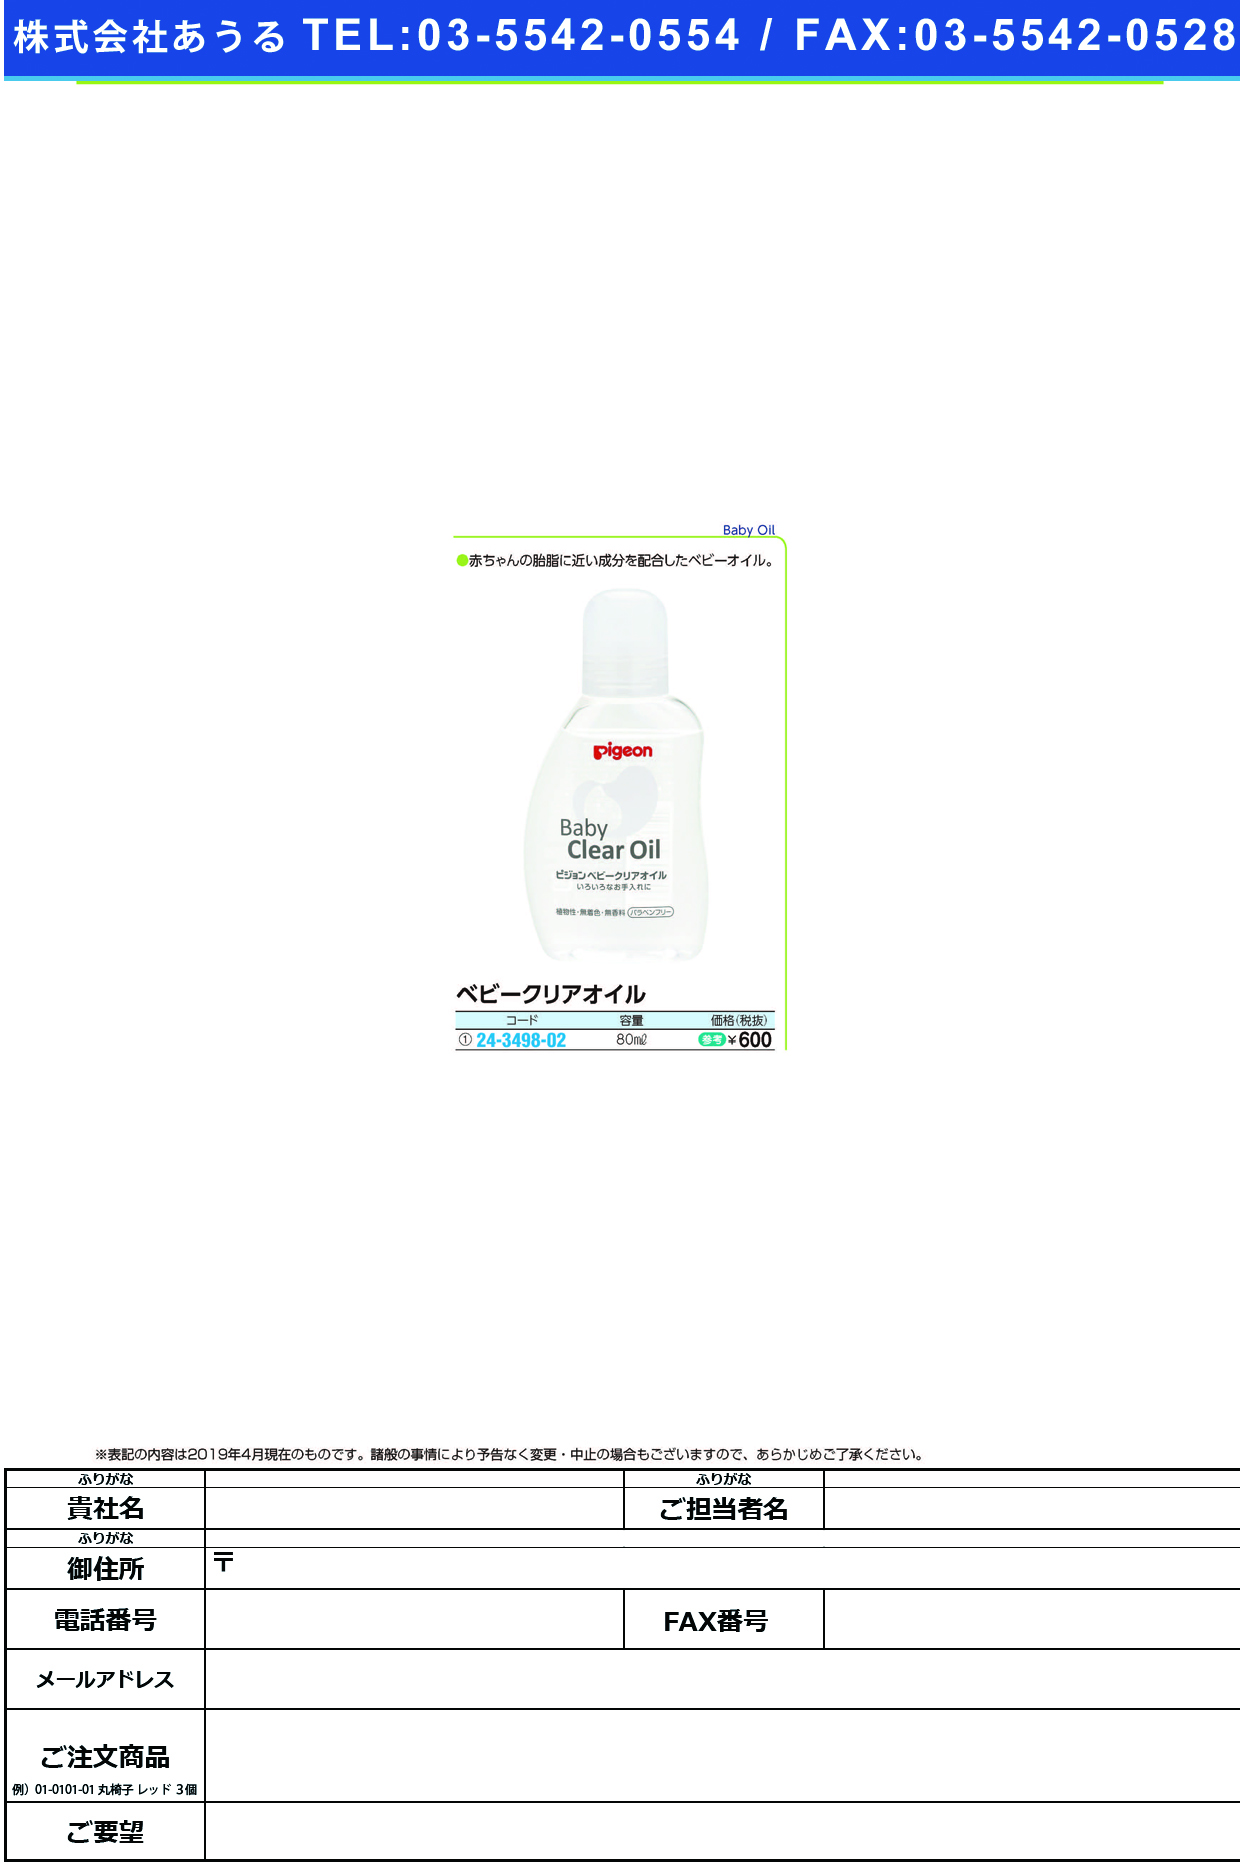 (24-3498-02)ベビークリアオイル 08375(80ML) ﾍﾞﾋﾞｰｸﾘｱｵｲﾙ(ピジョン)【1個単位】【2019年カタログ商品】